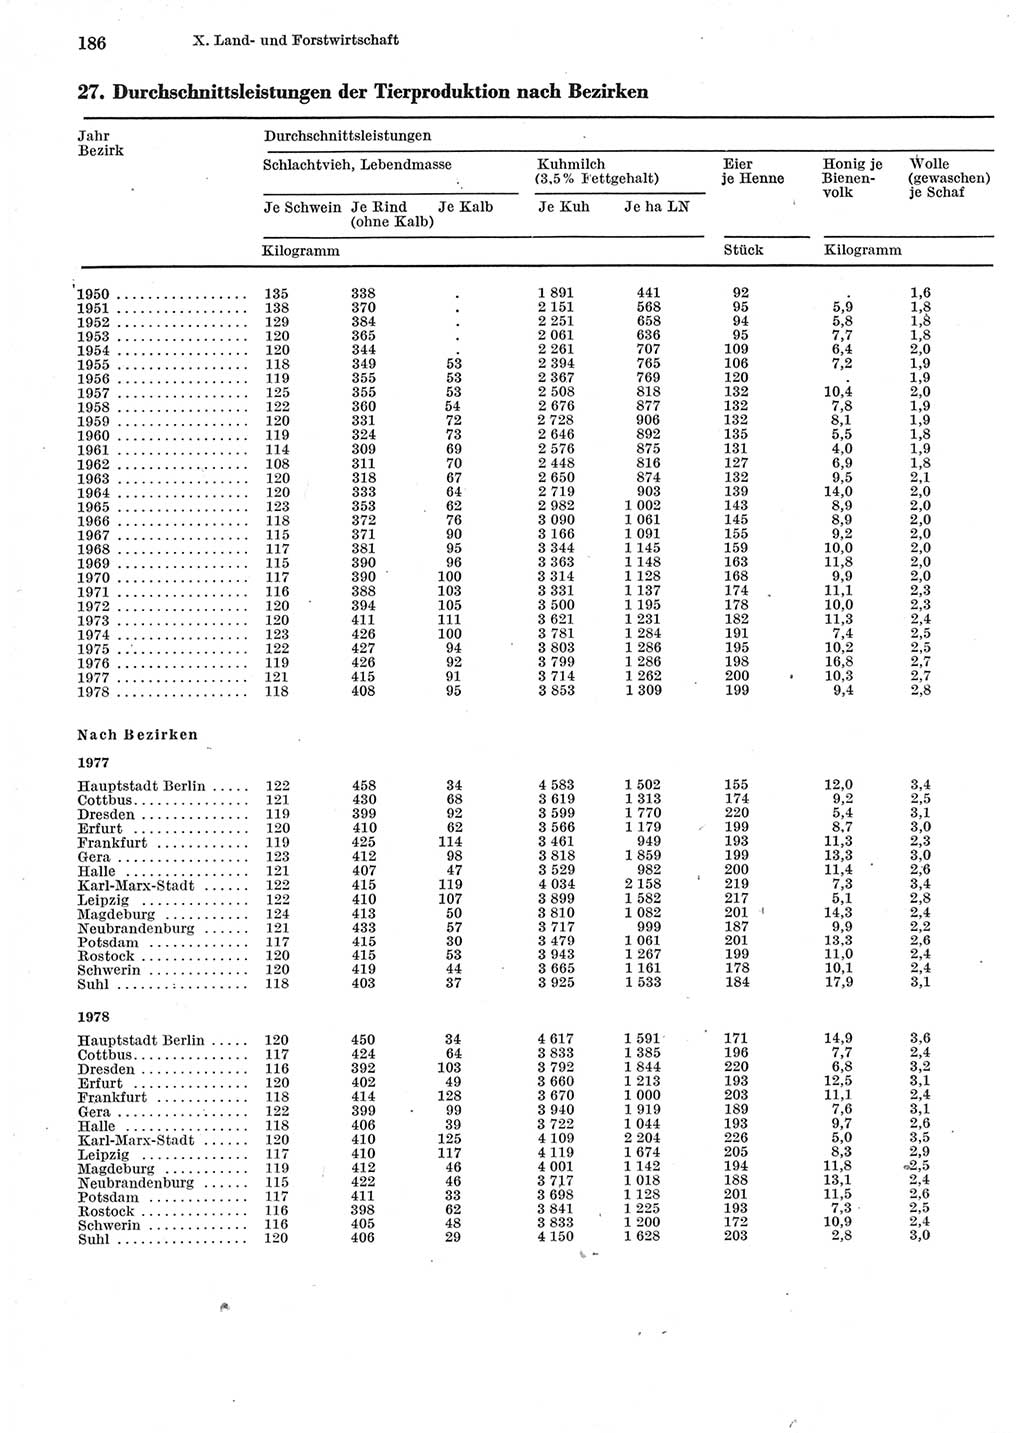 Statistisches Jahrbuch der Deutschen Demokratischen Republik (DDR) 1979, Seite 186 (Stat. Jb. DDR 1979, S. 186)